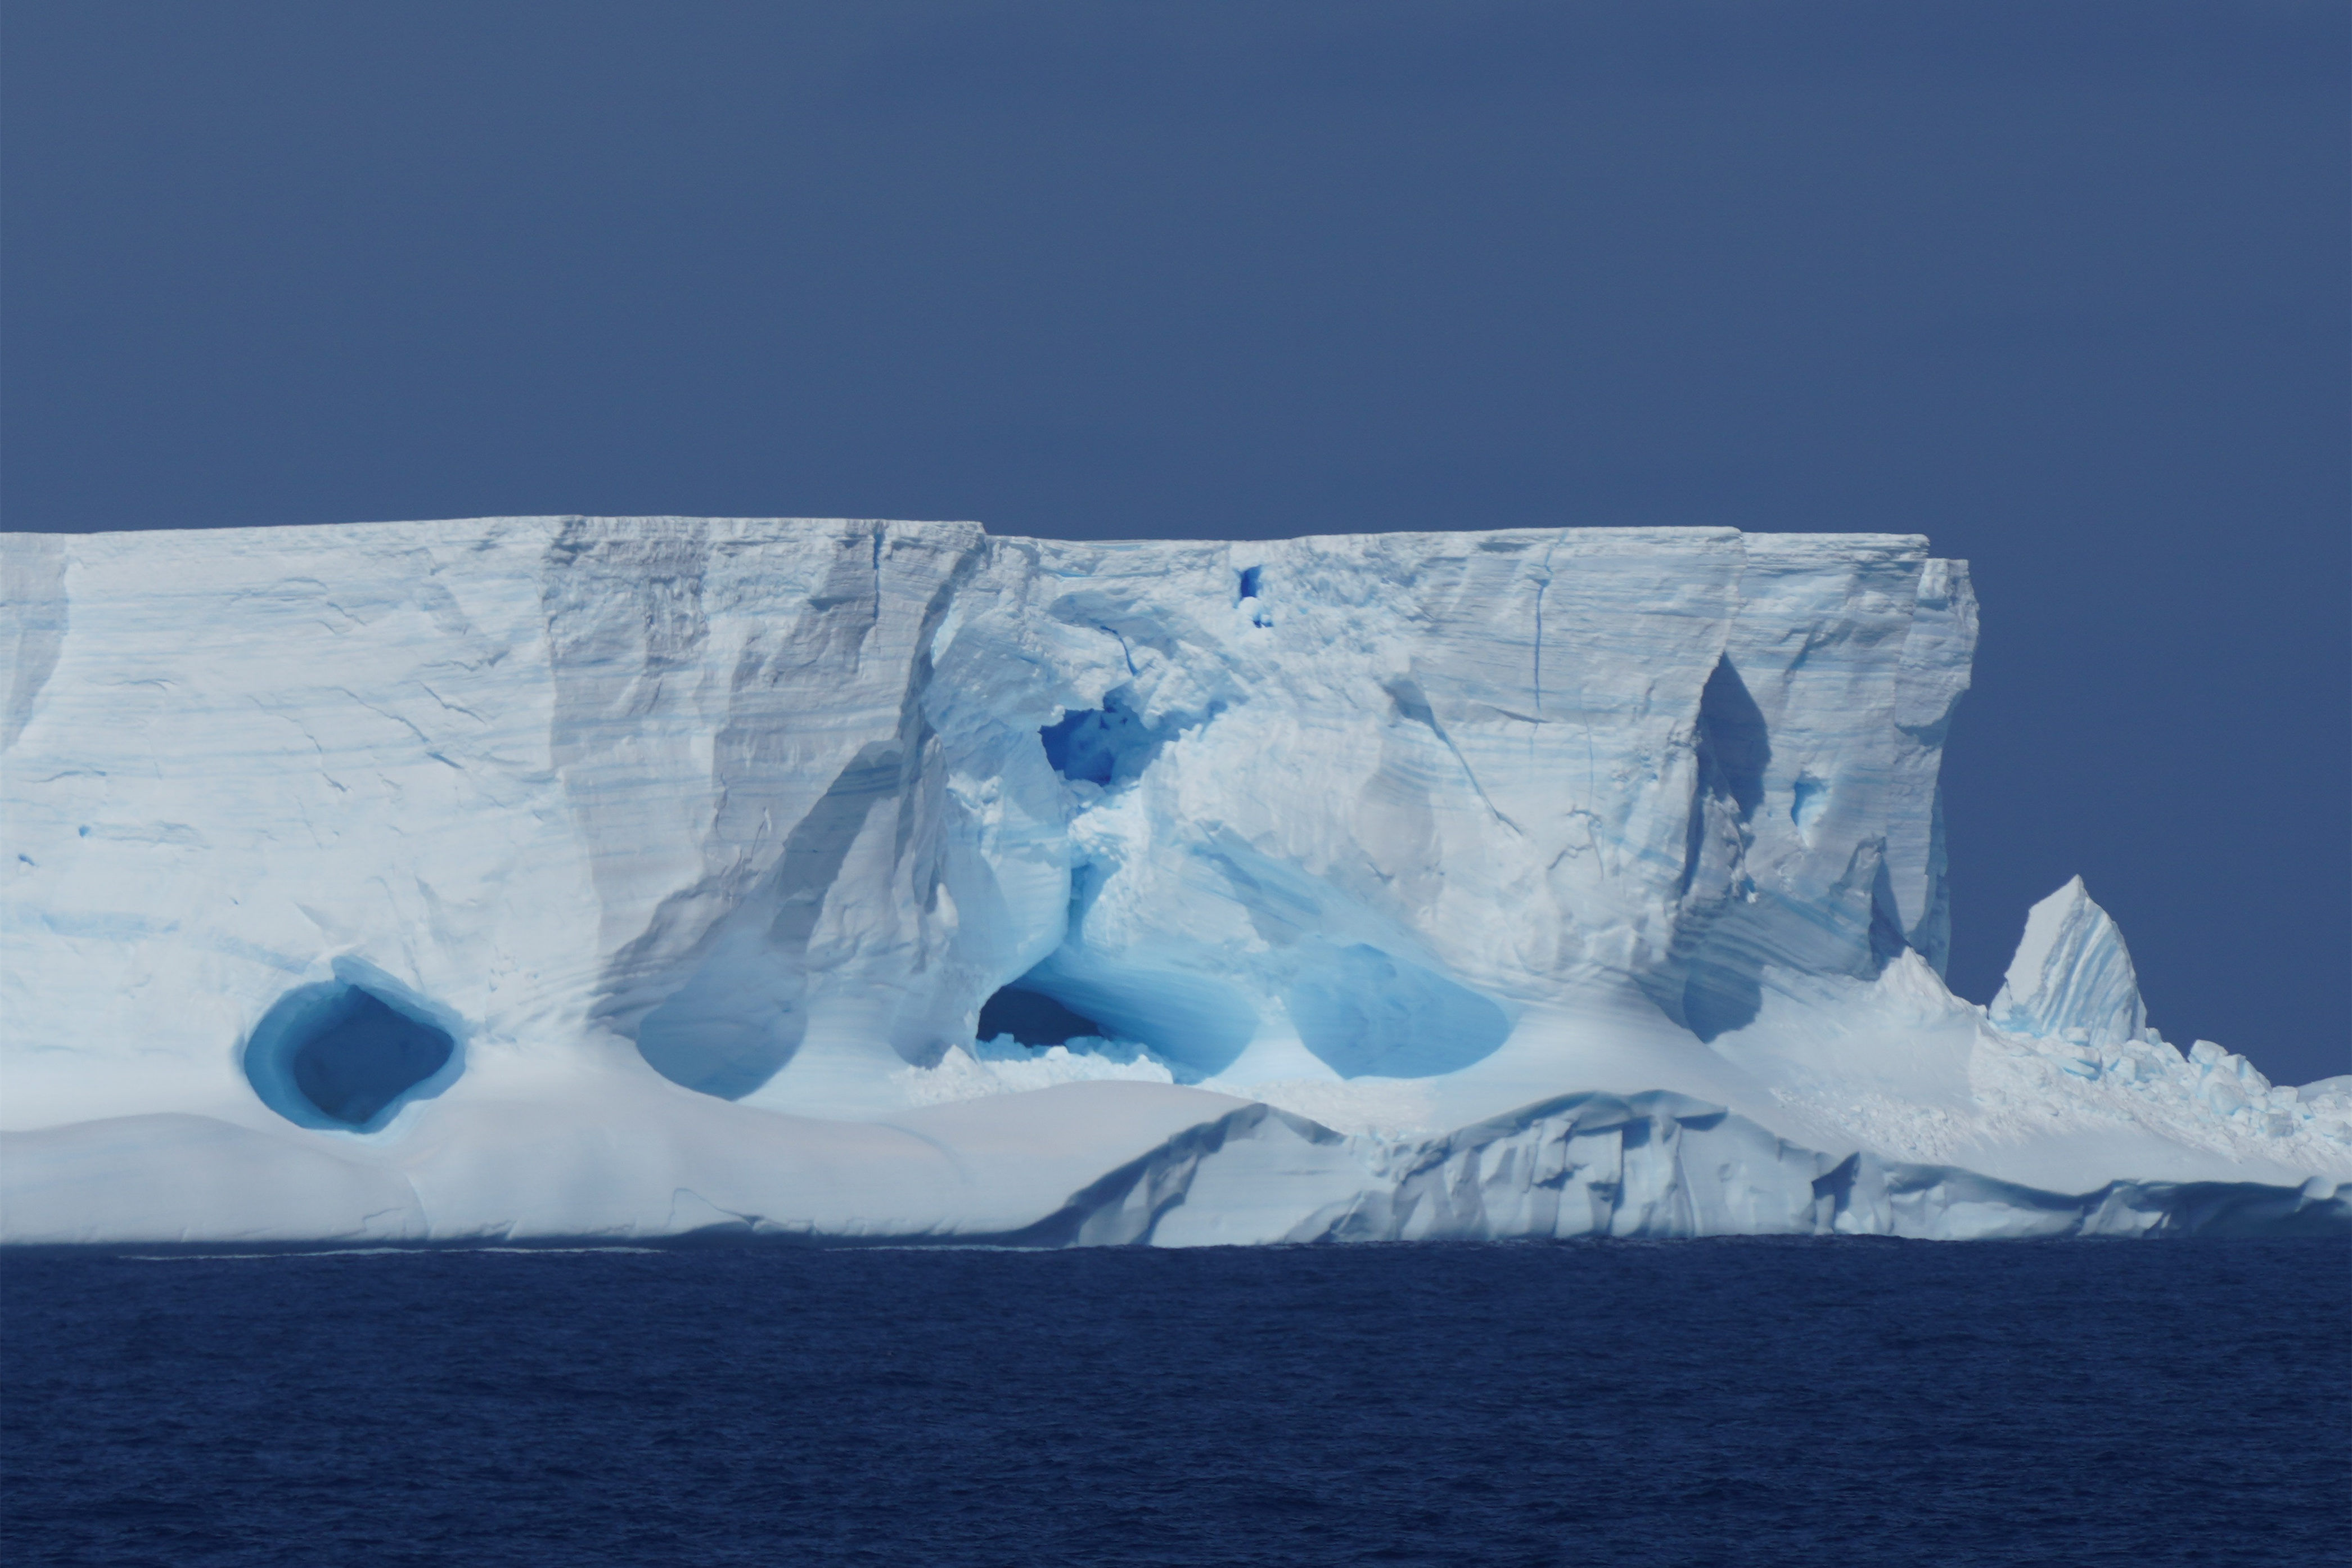 时间也像是凝固了：大地遥感卫星9号带你一览南极洲的“永恒冬岛” - 科学探索 - cnBeta.COM